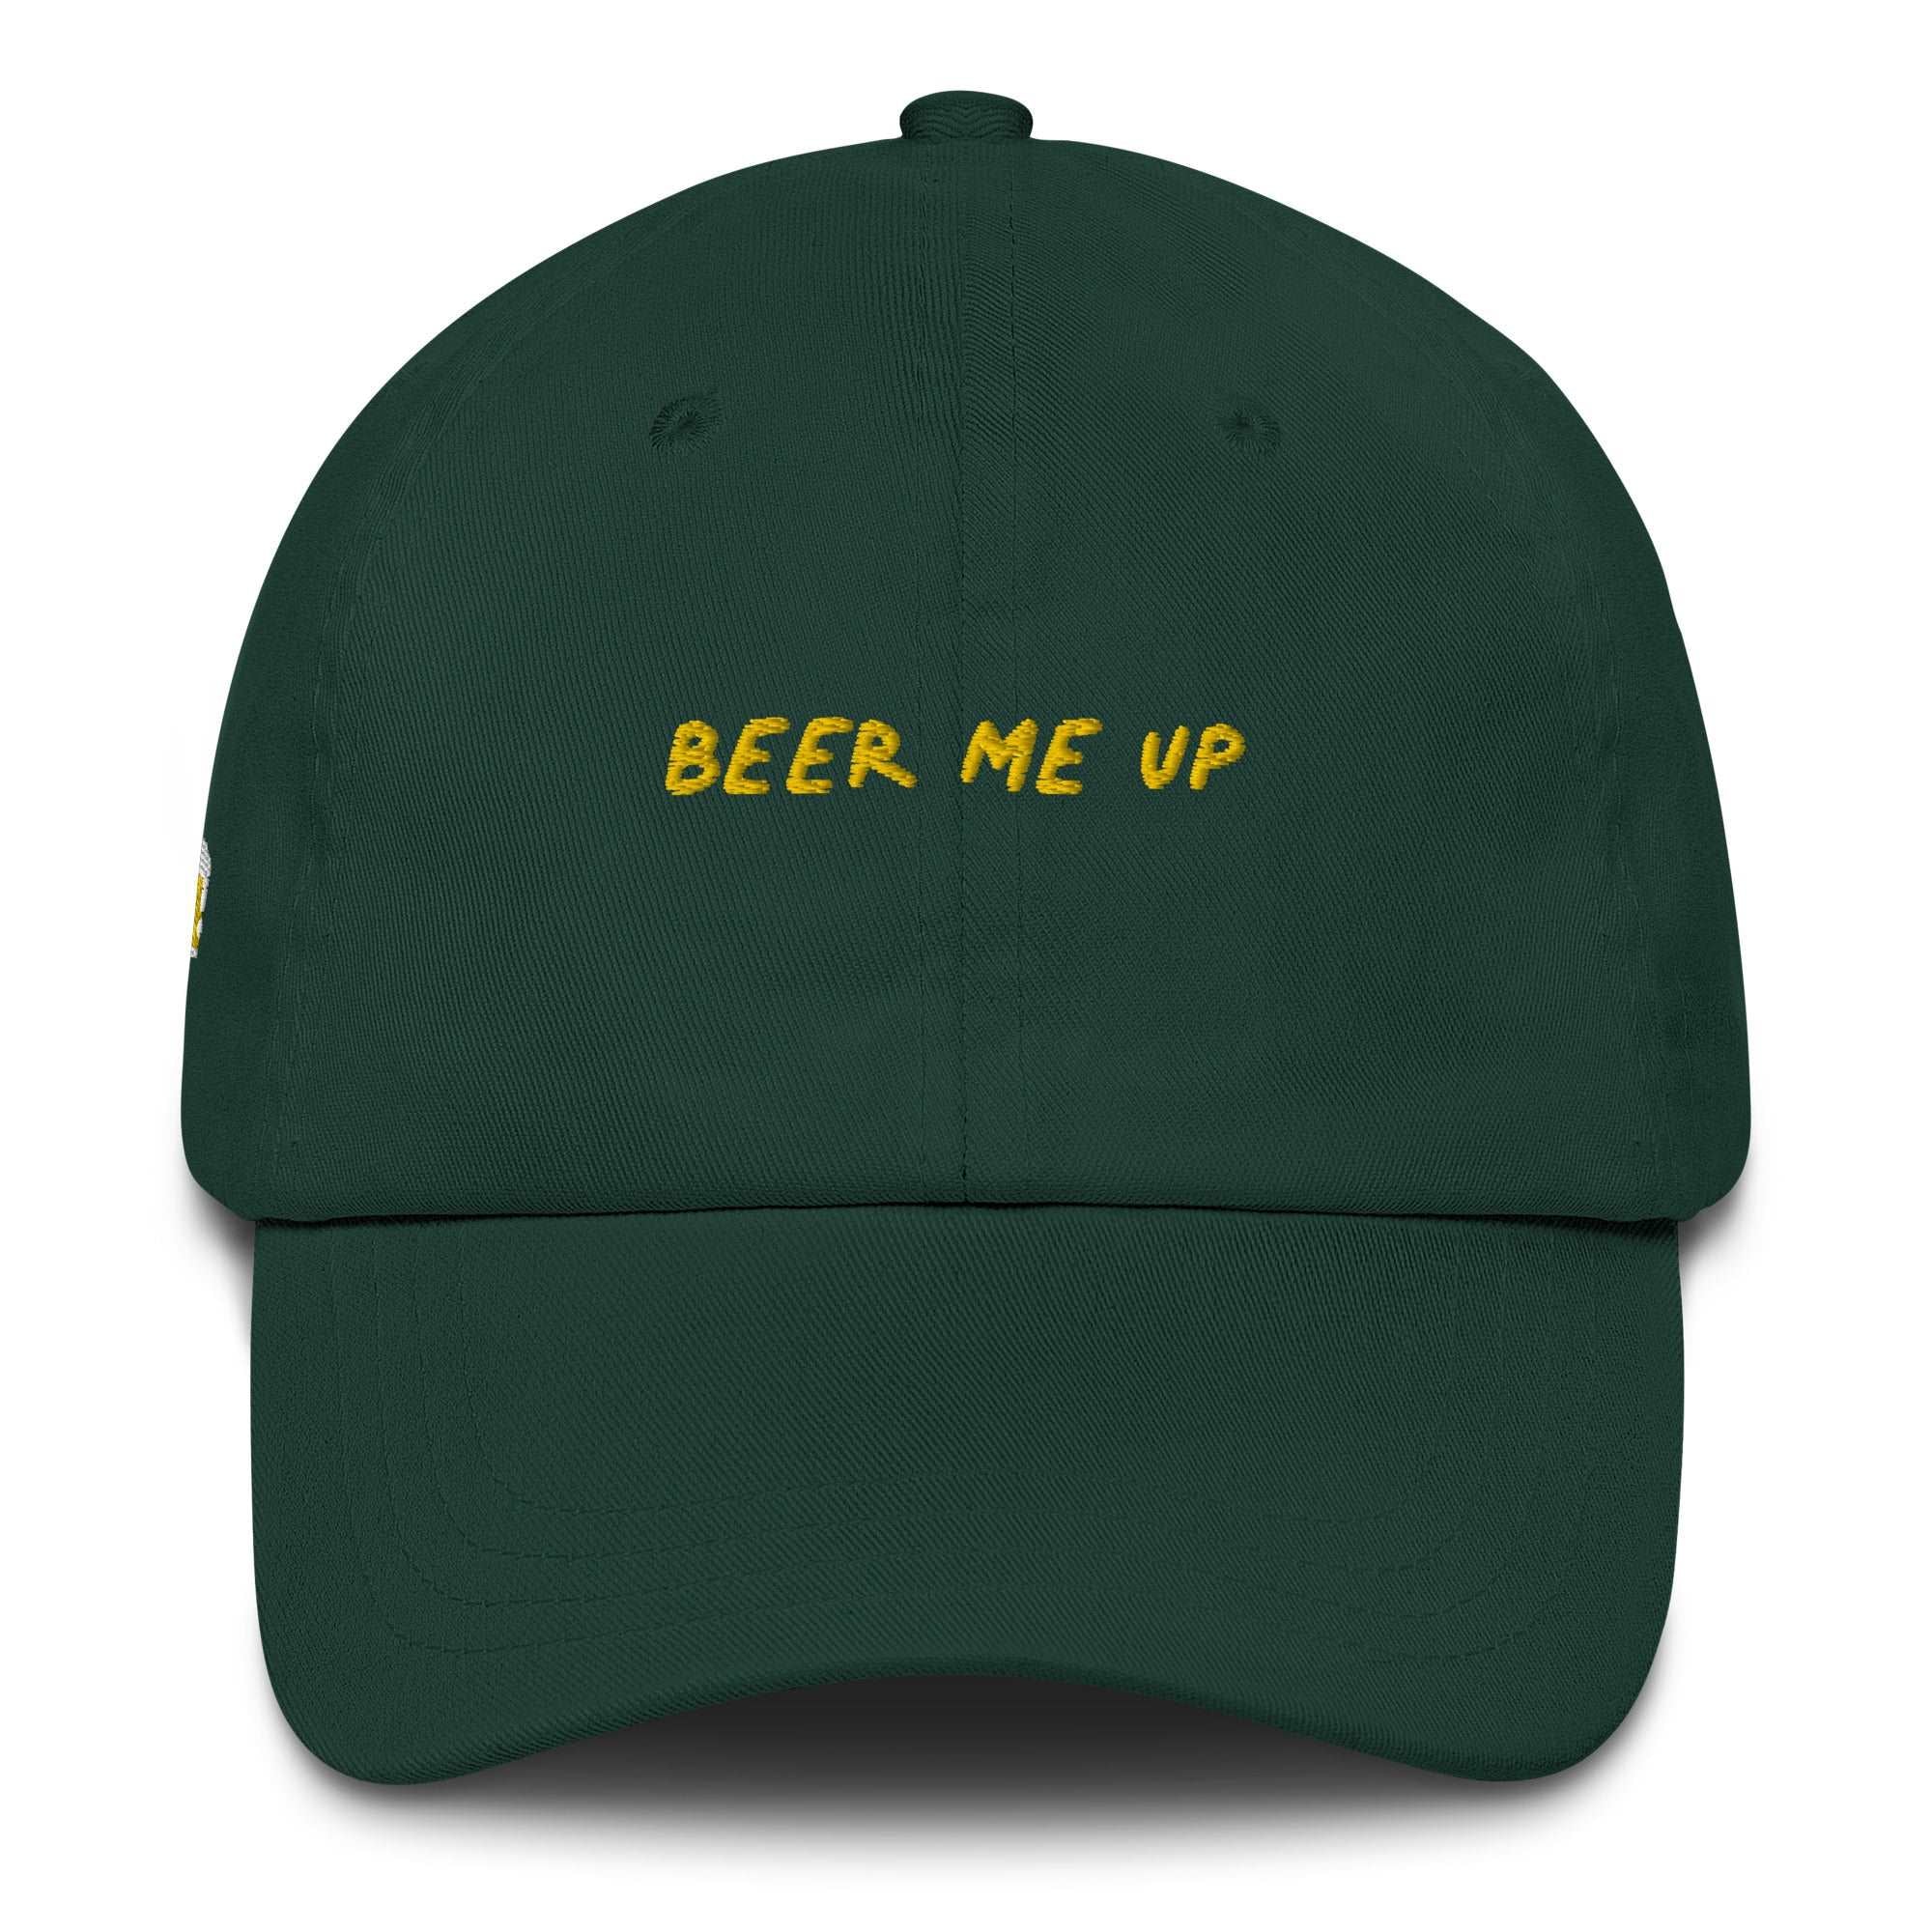 Beer me up - Cap